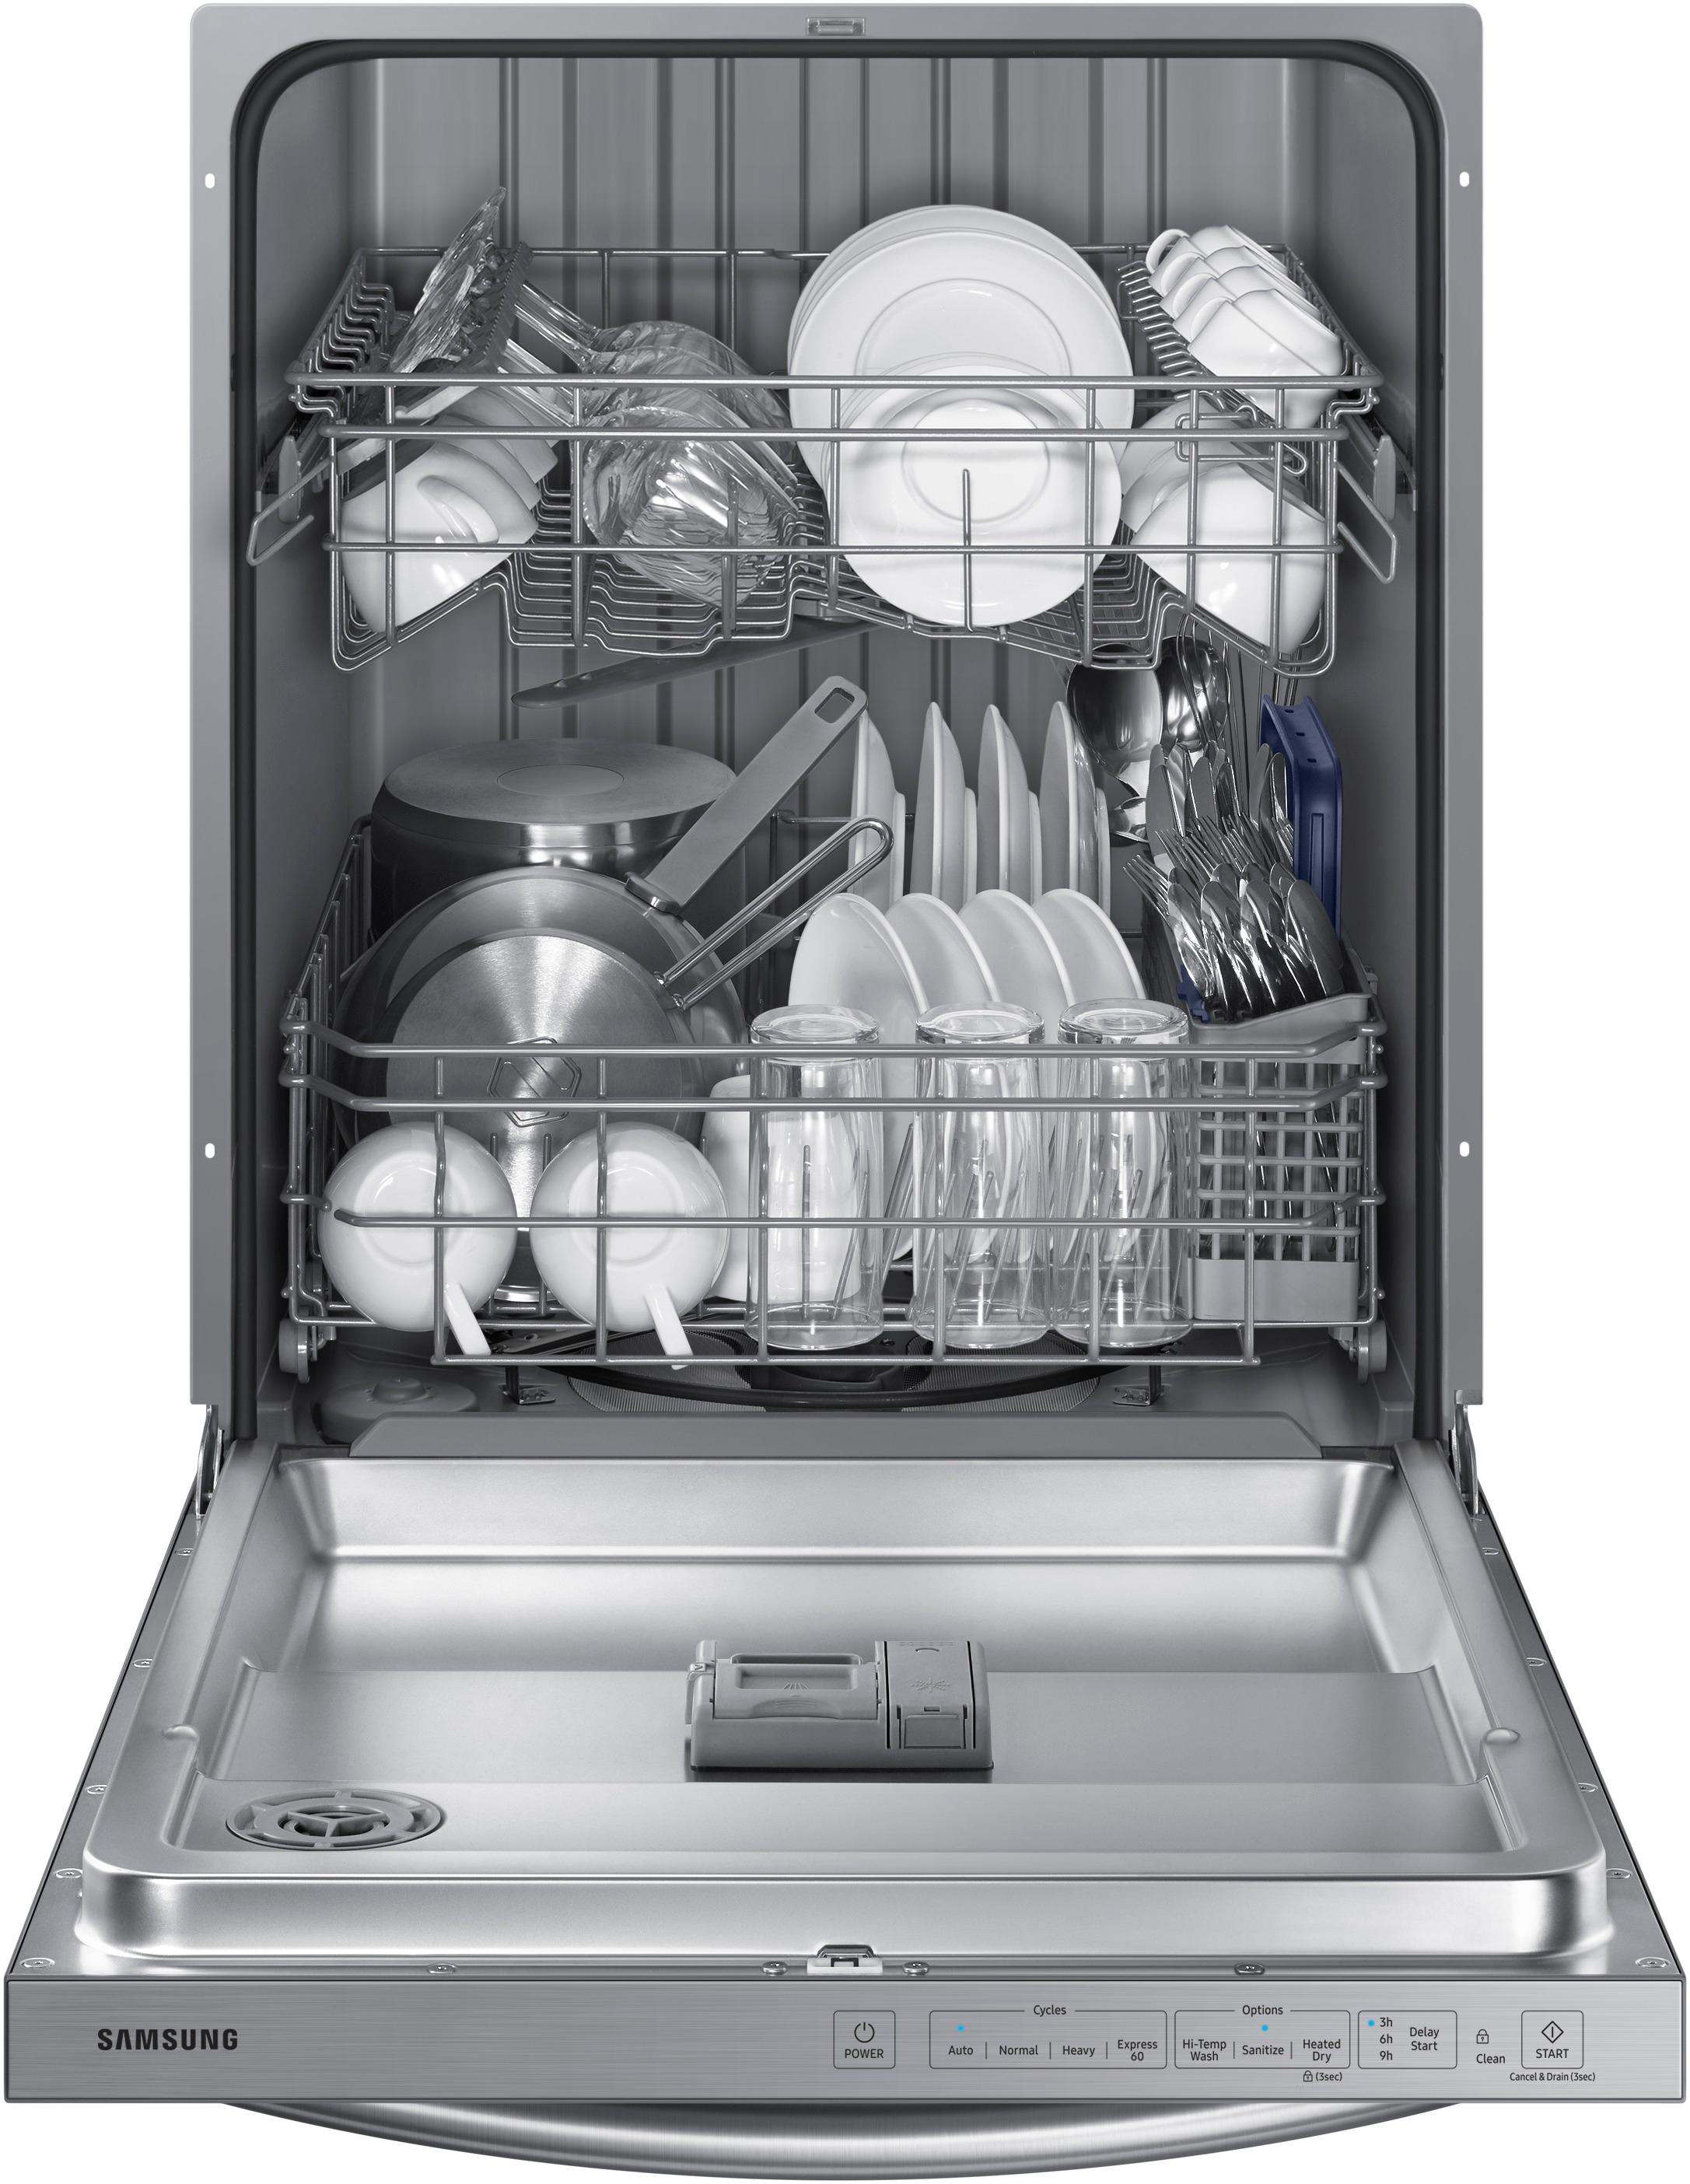 samsung 24 built in dishwasher